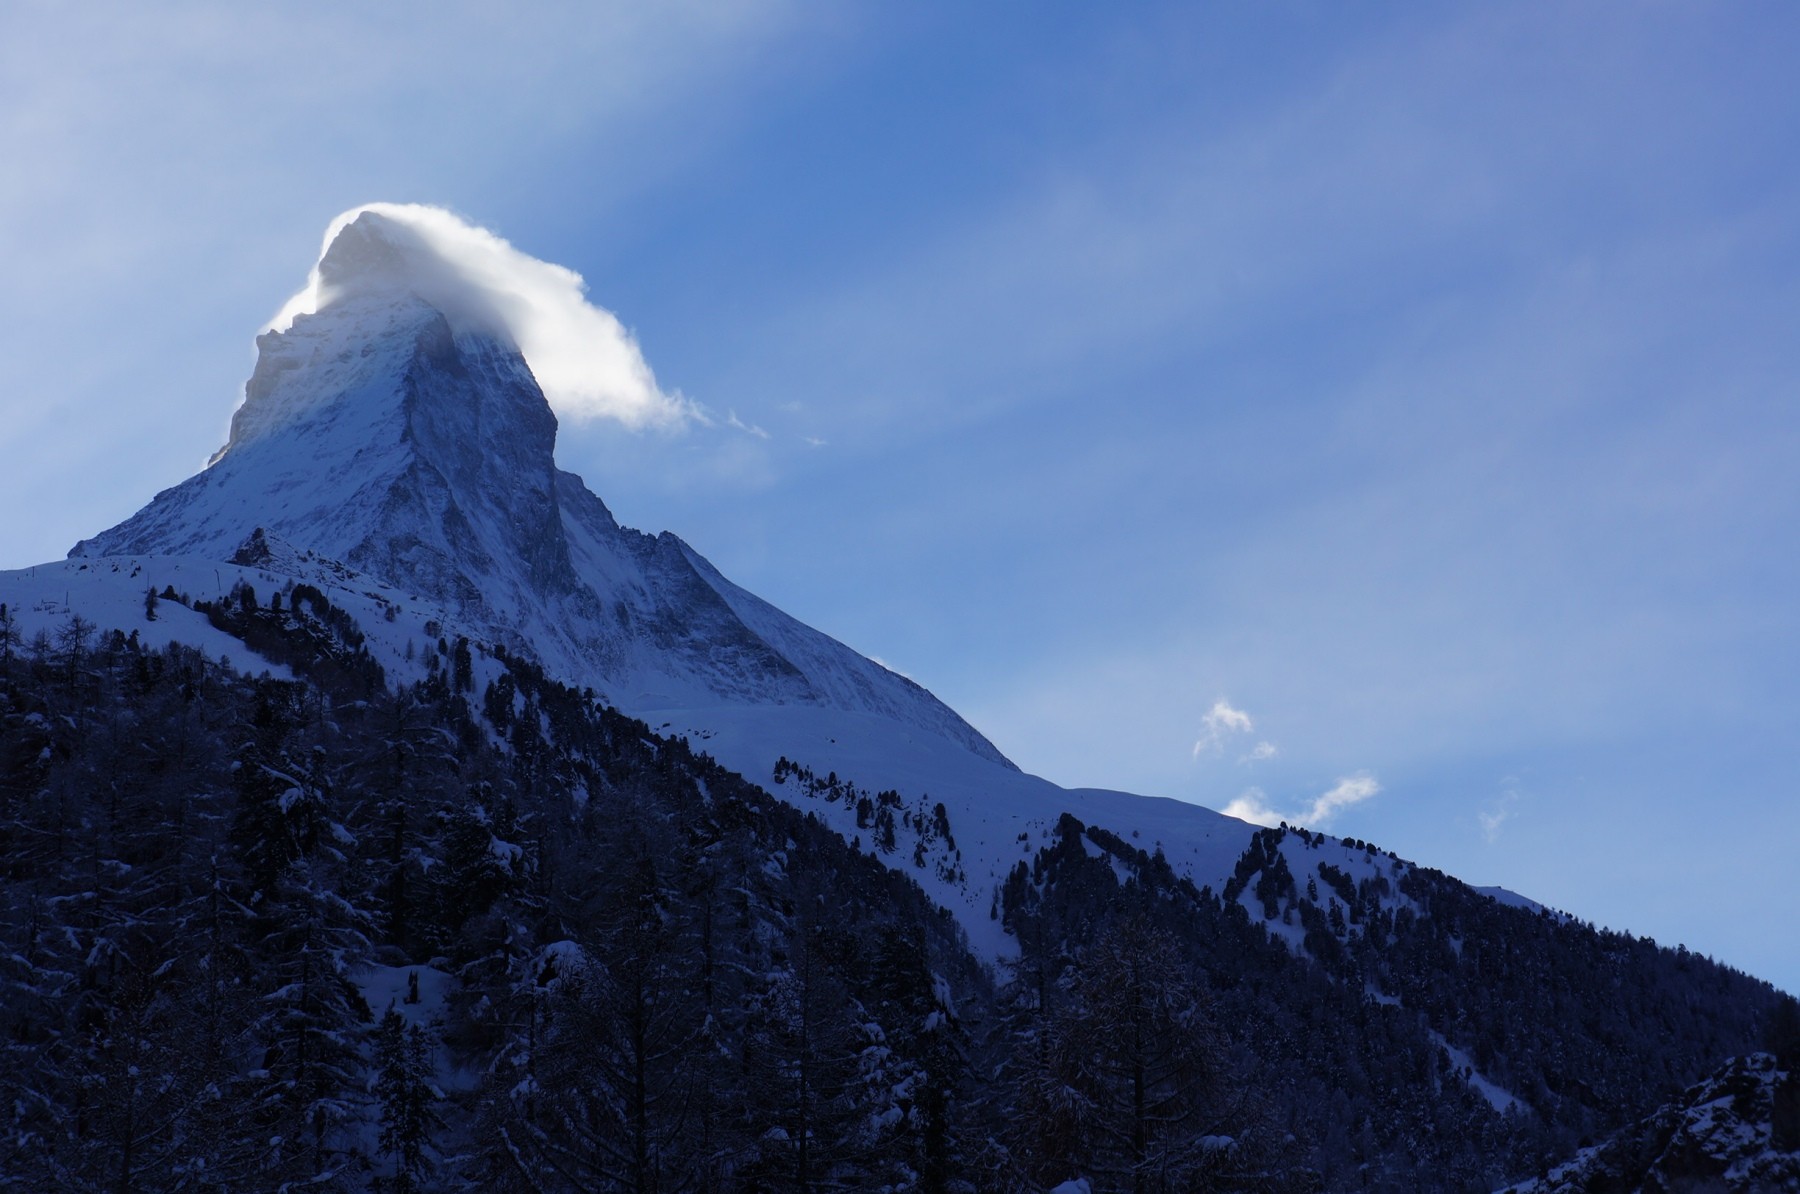 Das mächtige Matterhorn: Wie eine Hüterin mit wehendem Haar!